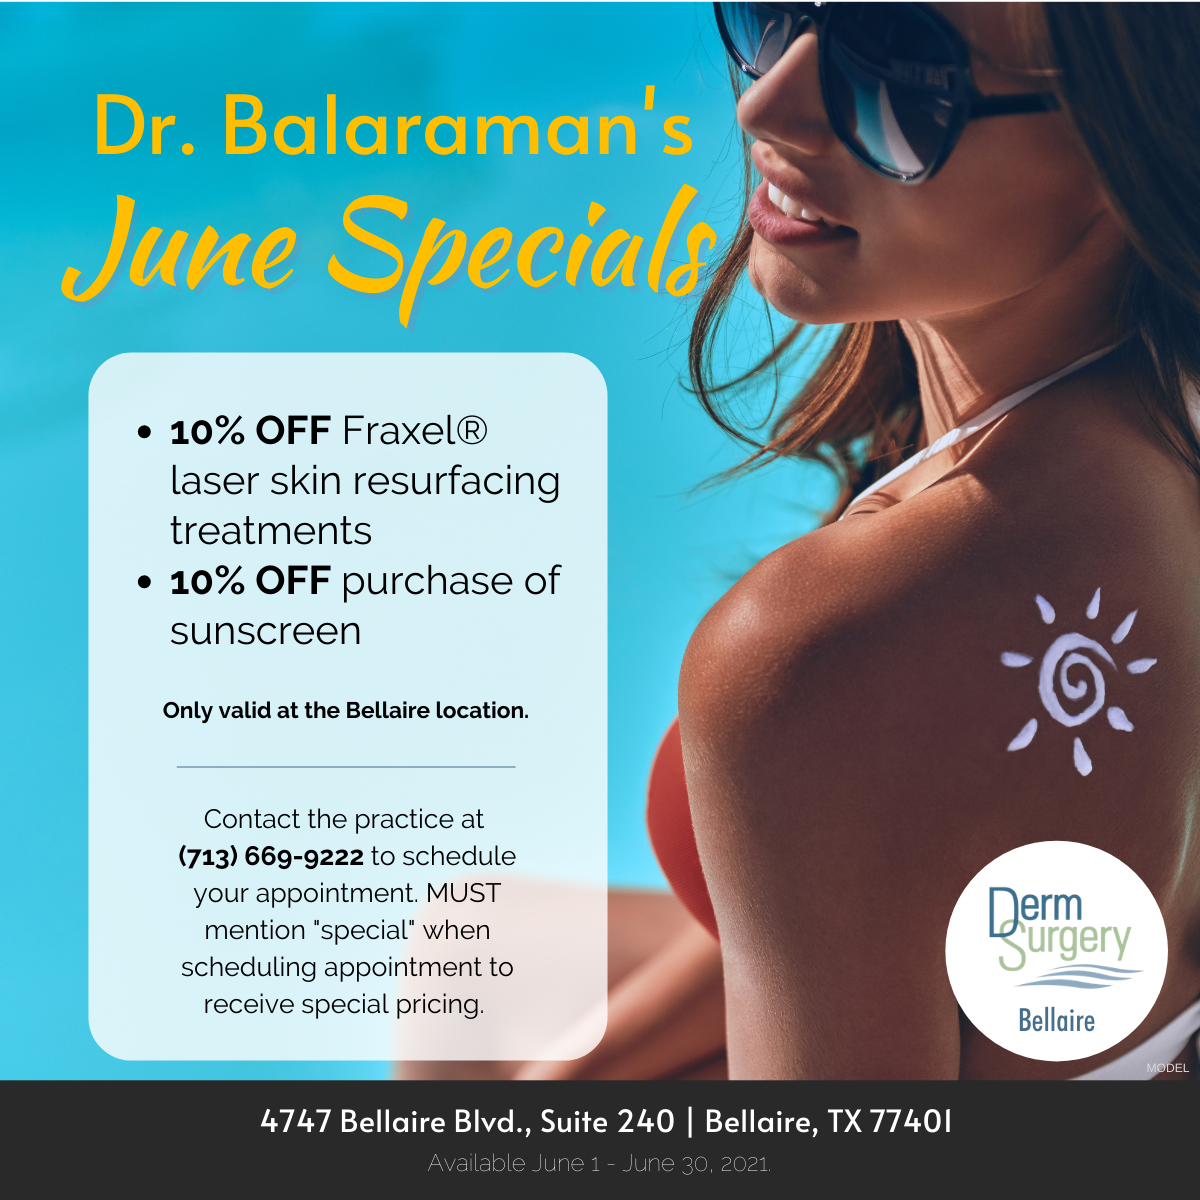 Dr. Balaraman's June Specials